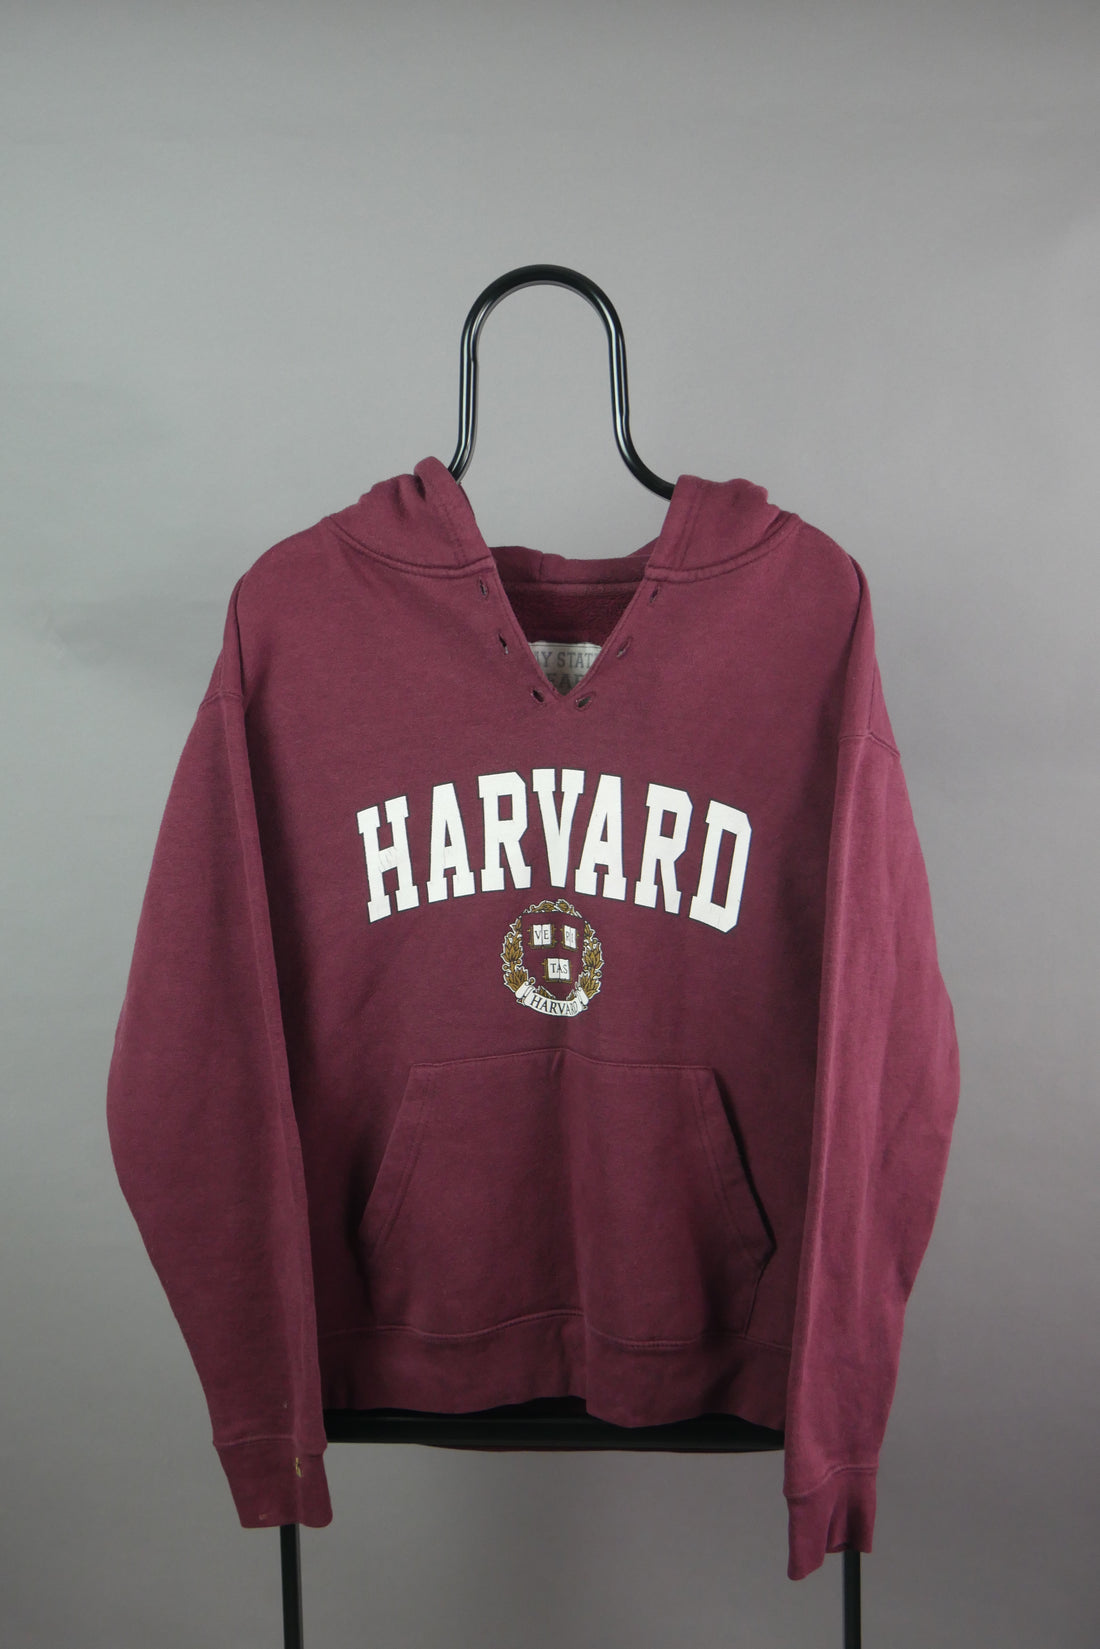 The Vintage Harvard Graphic Hoodie (M)